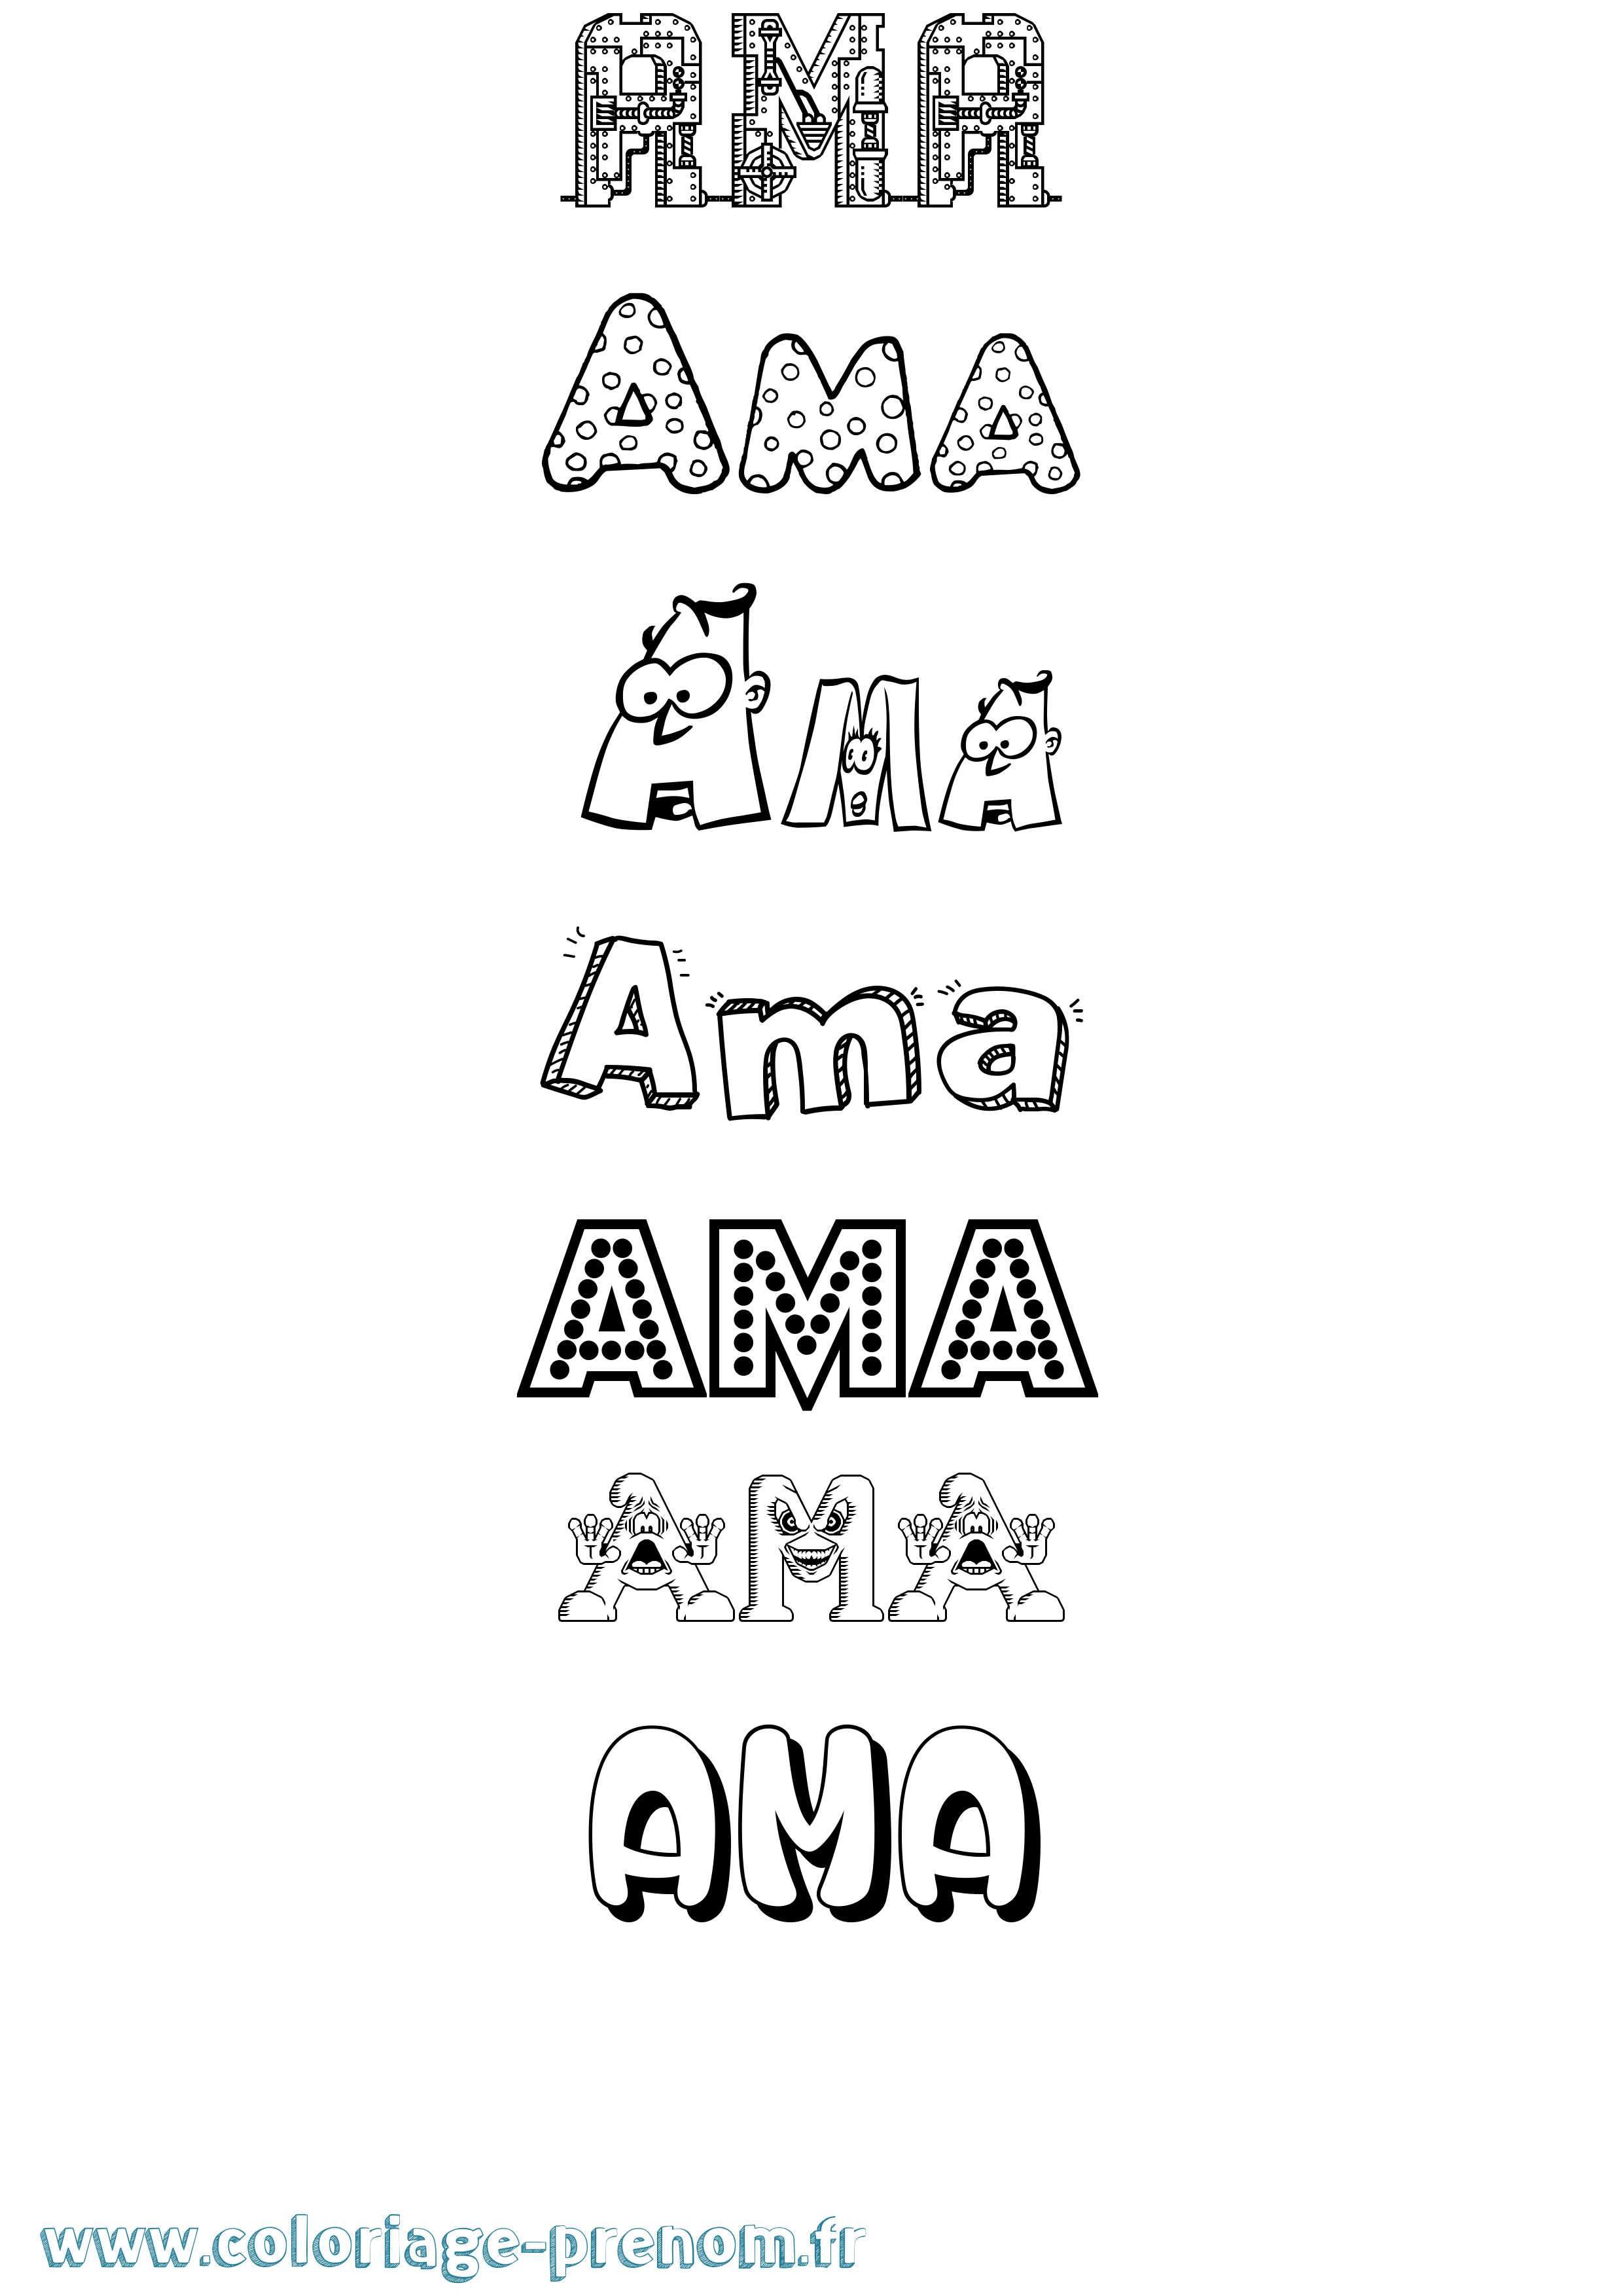 Coloriage prénom Ama Fun